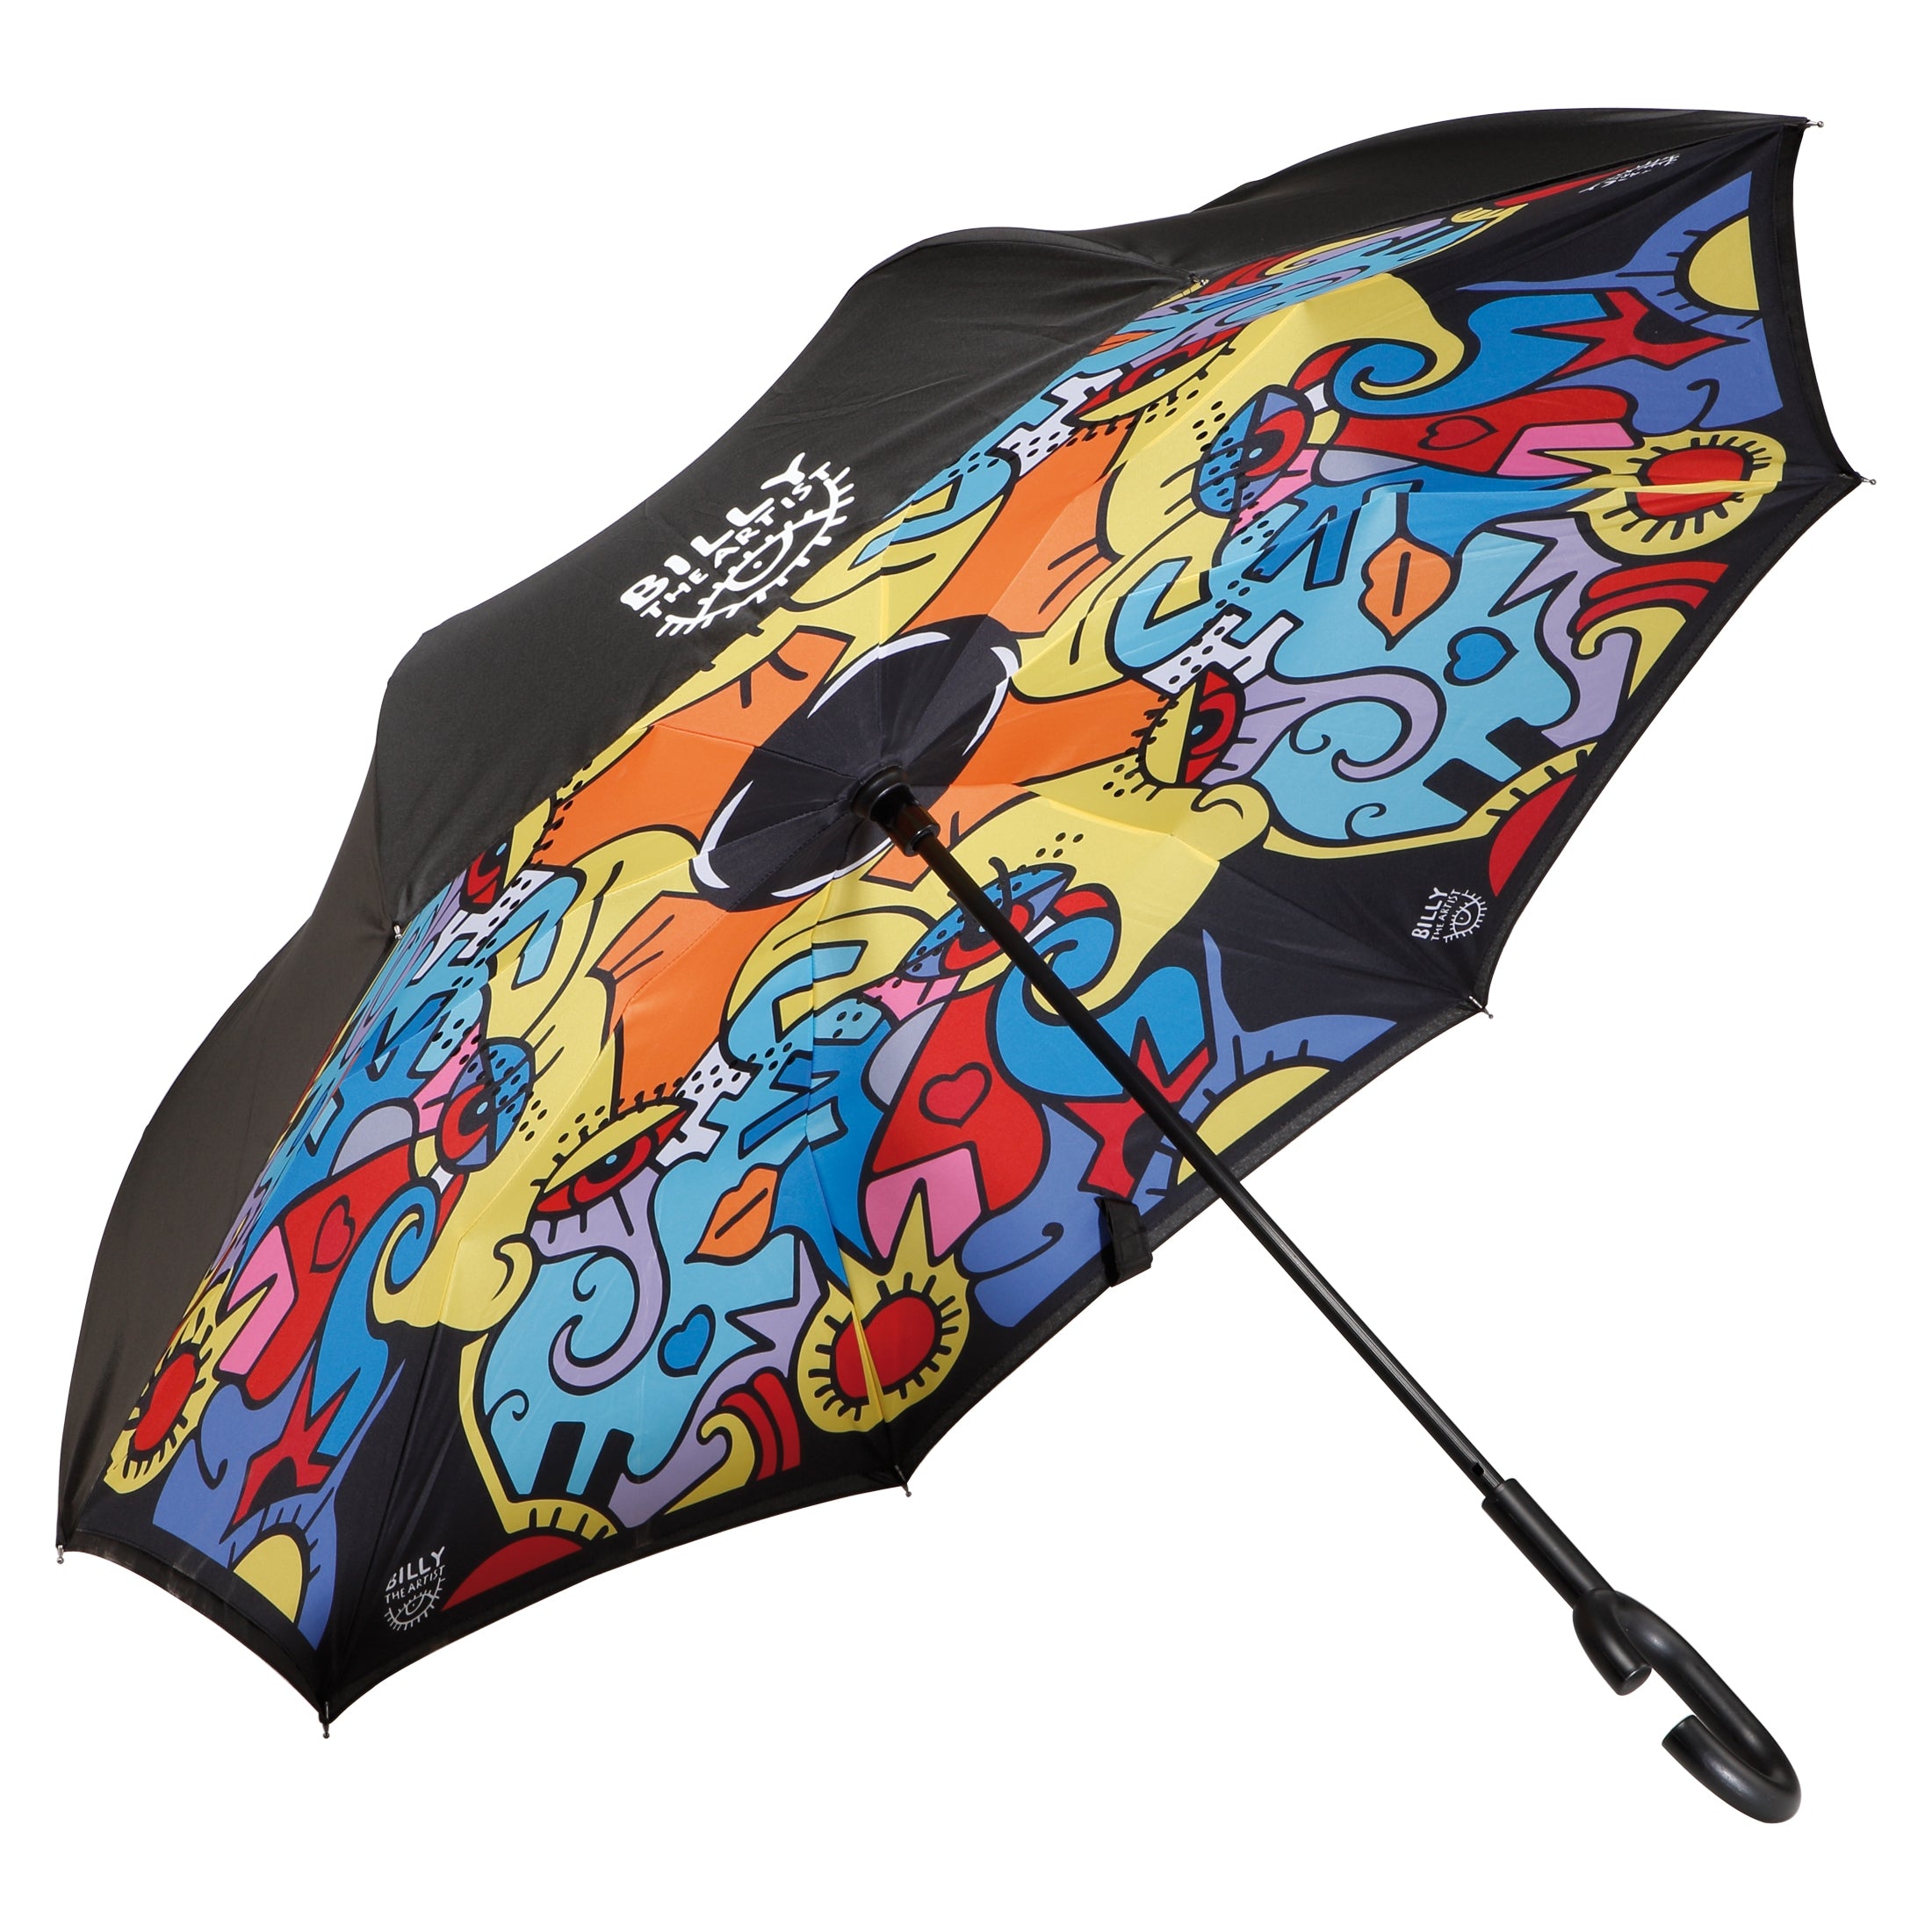 Together oppned paraply med popart design